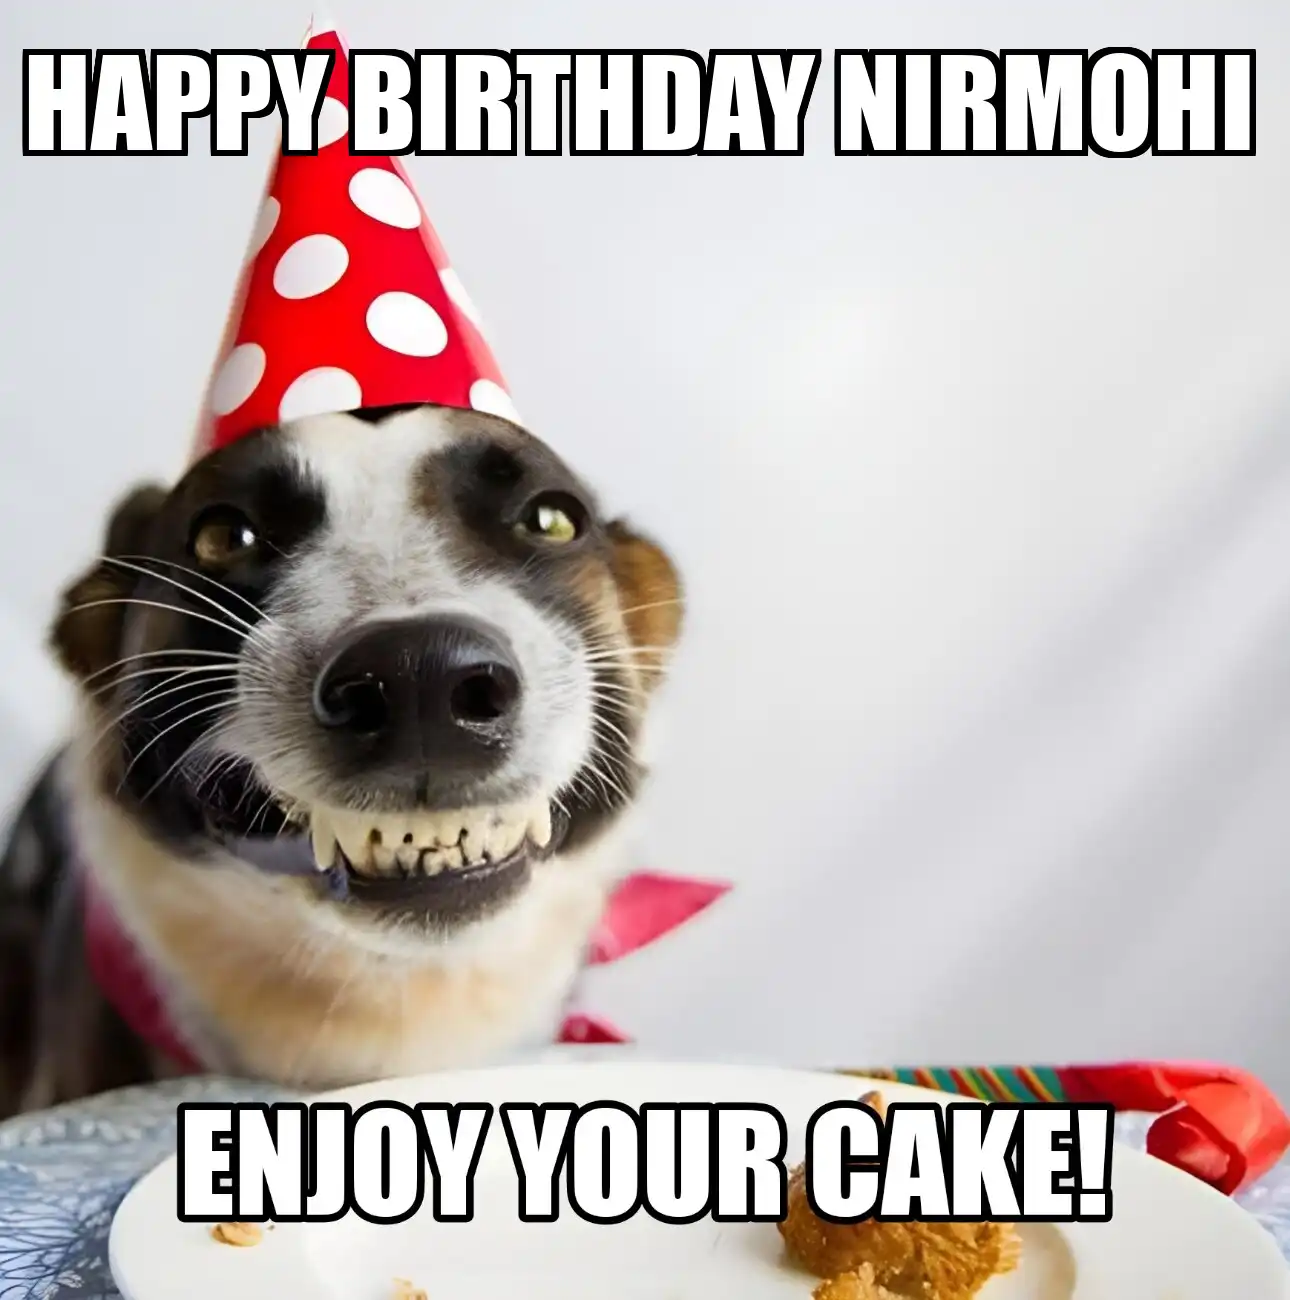 Happy Birthday Nirmohi Enjoy Your Cake Dog Meme